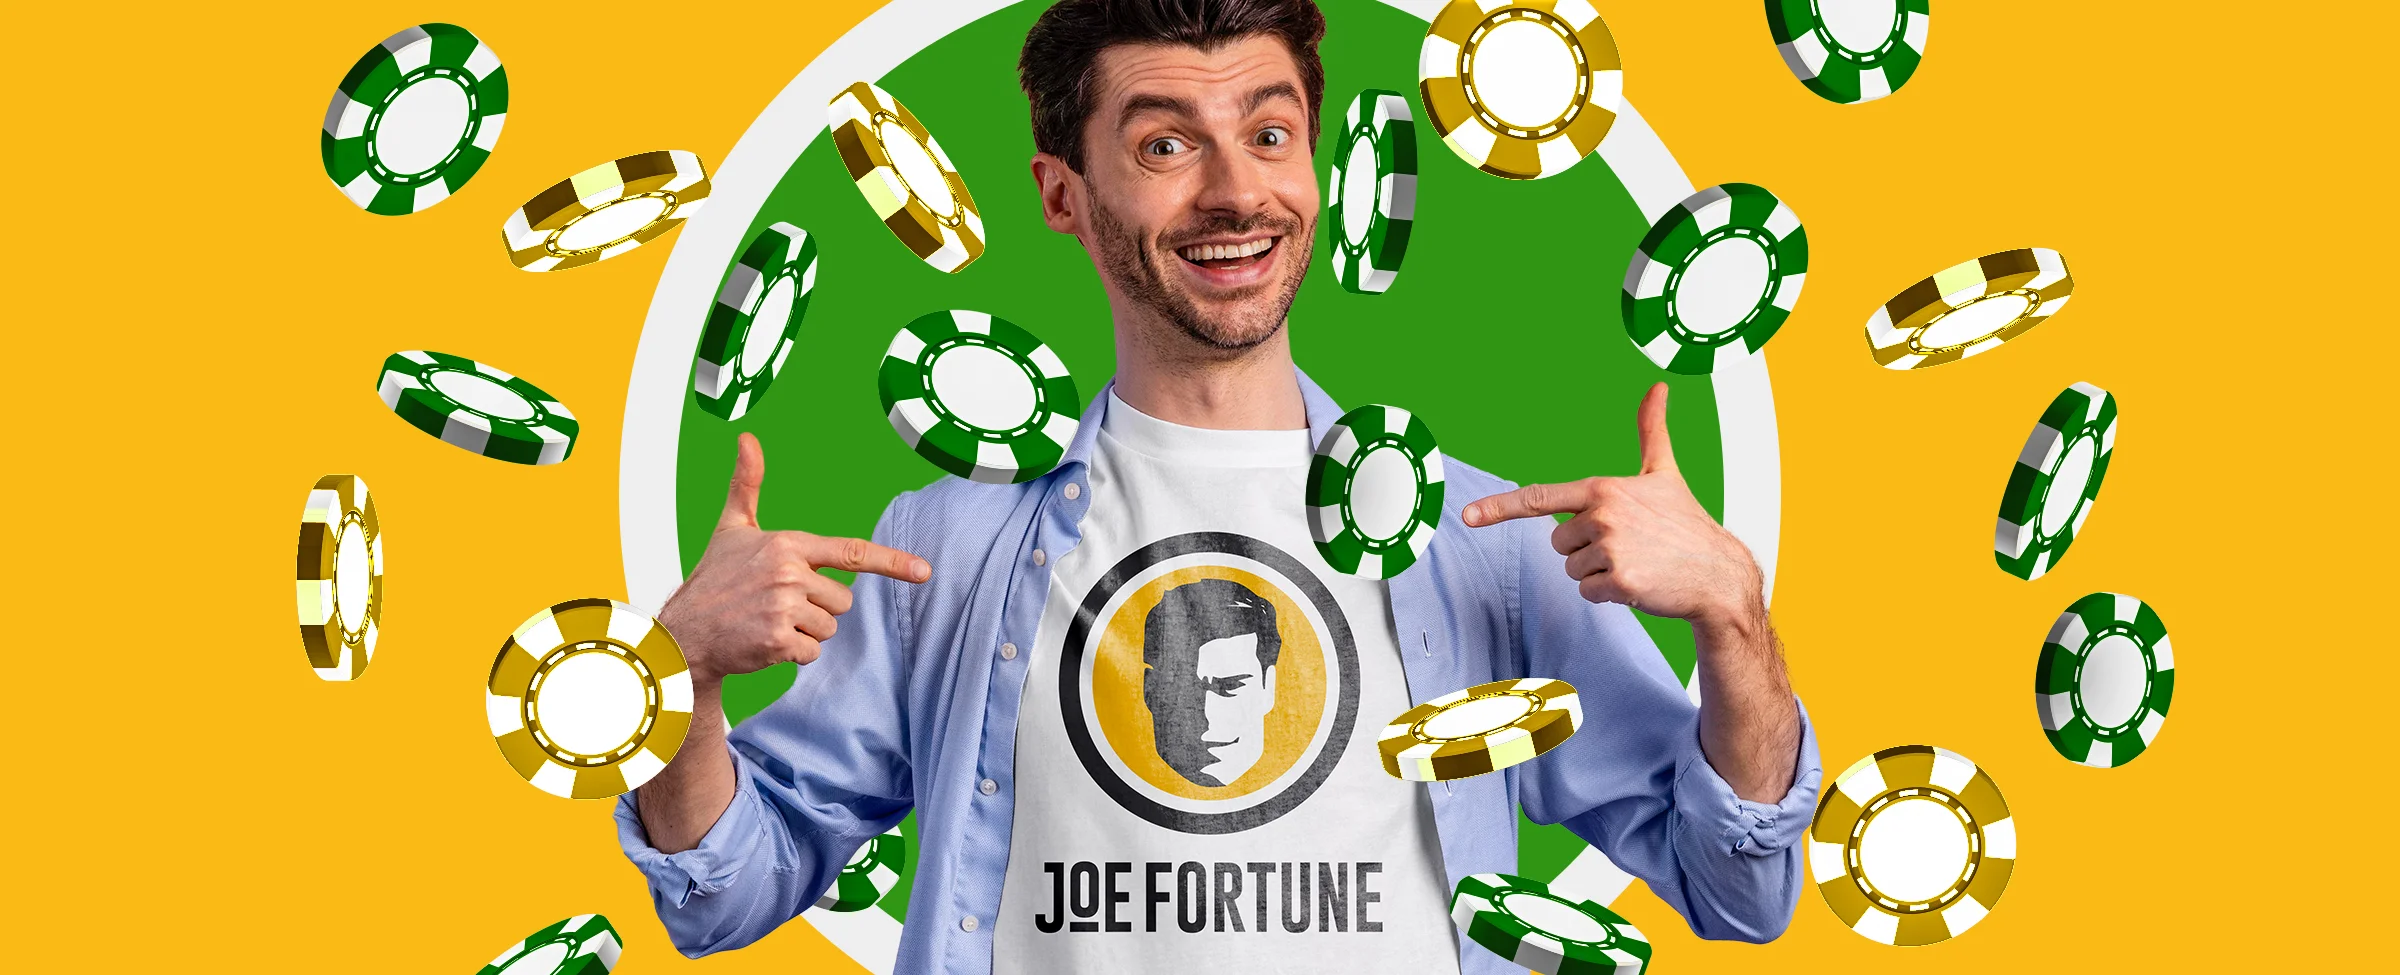 Joe Fortuneカジノ・オーストラリア